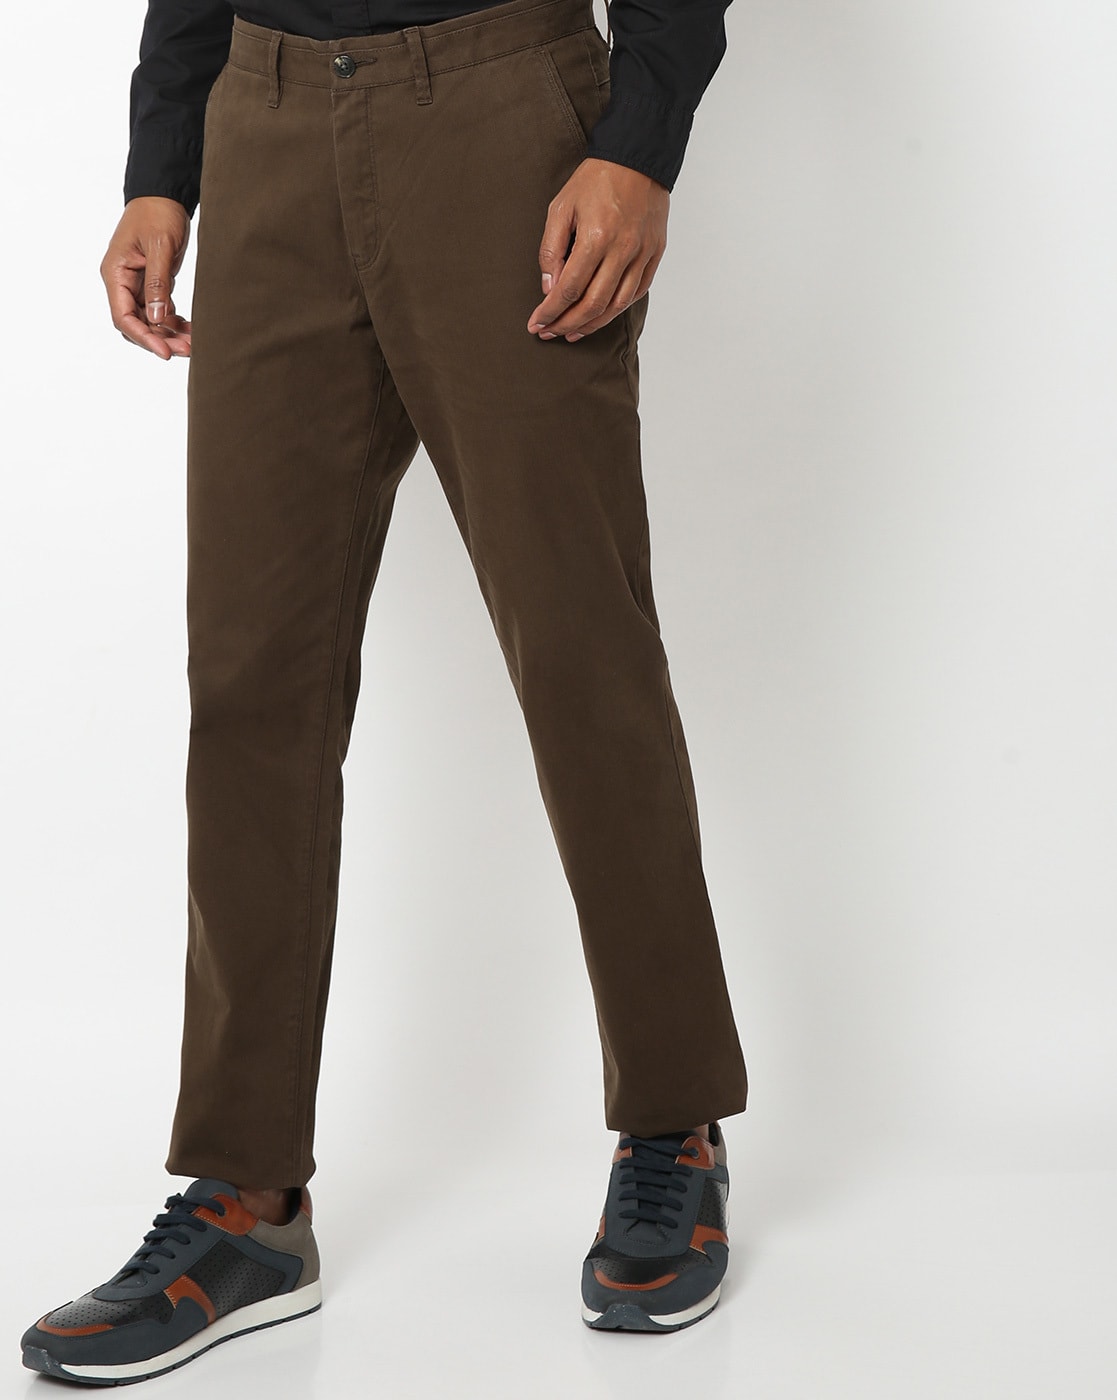 Dark Brown Pants For Men